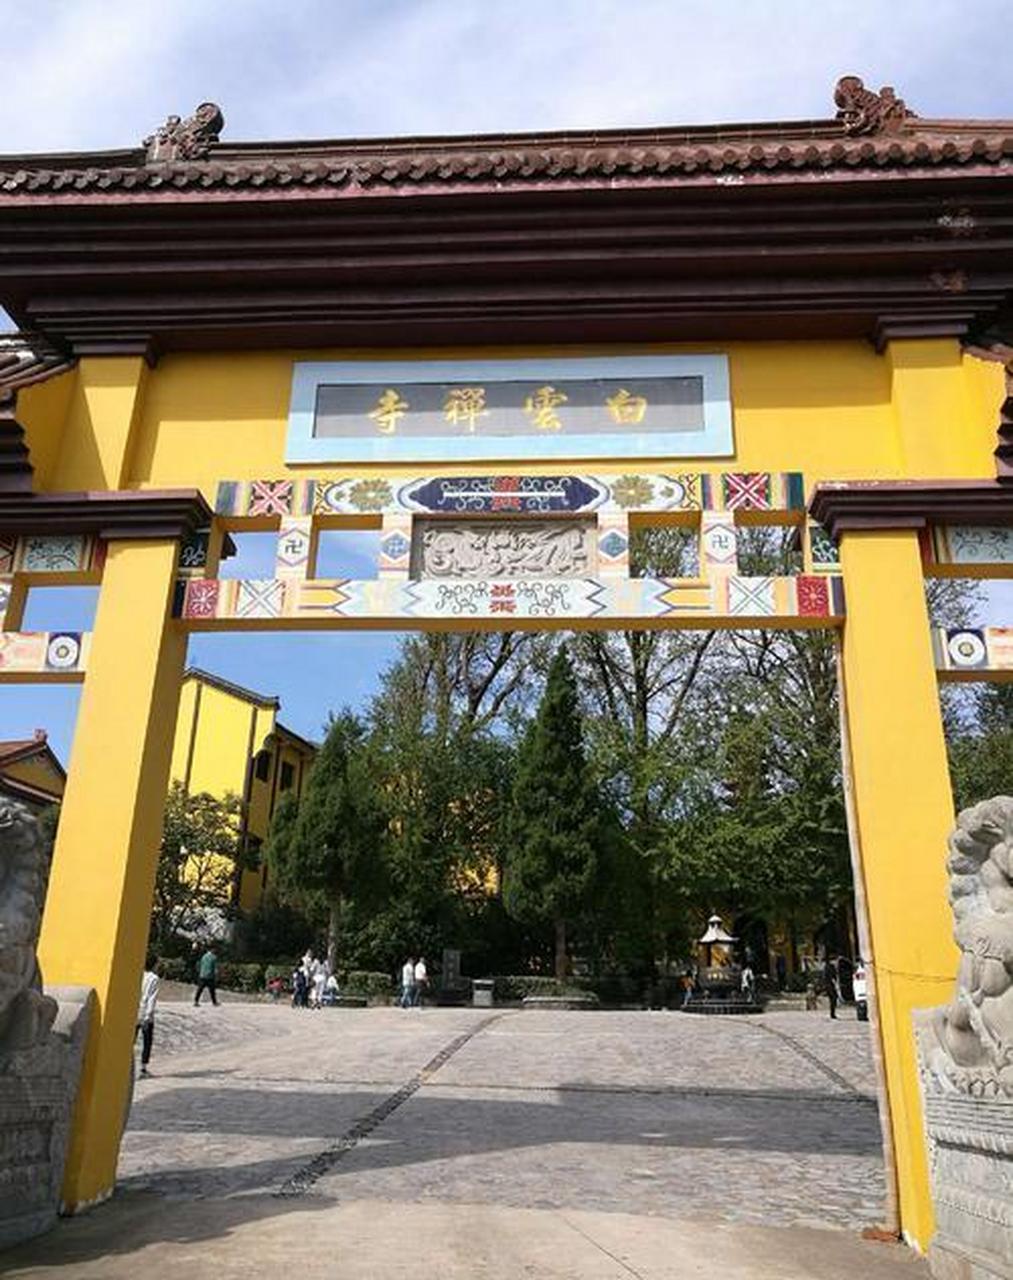 白云禅寺位于河南省商丘市民权县白云镇白云寺村,是我国著名的宗教